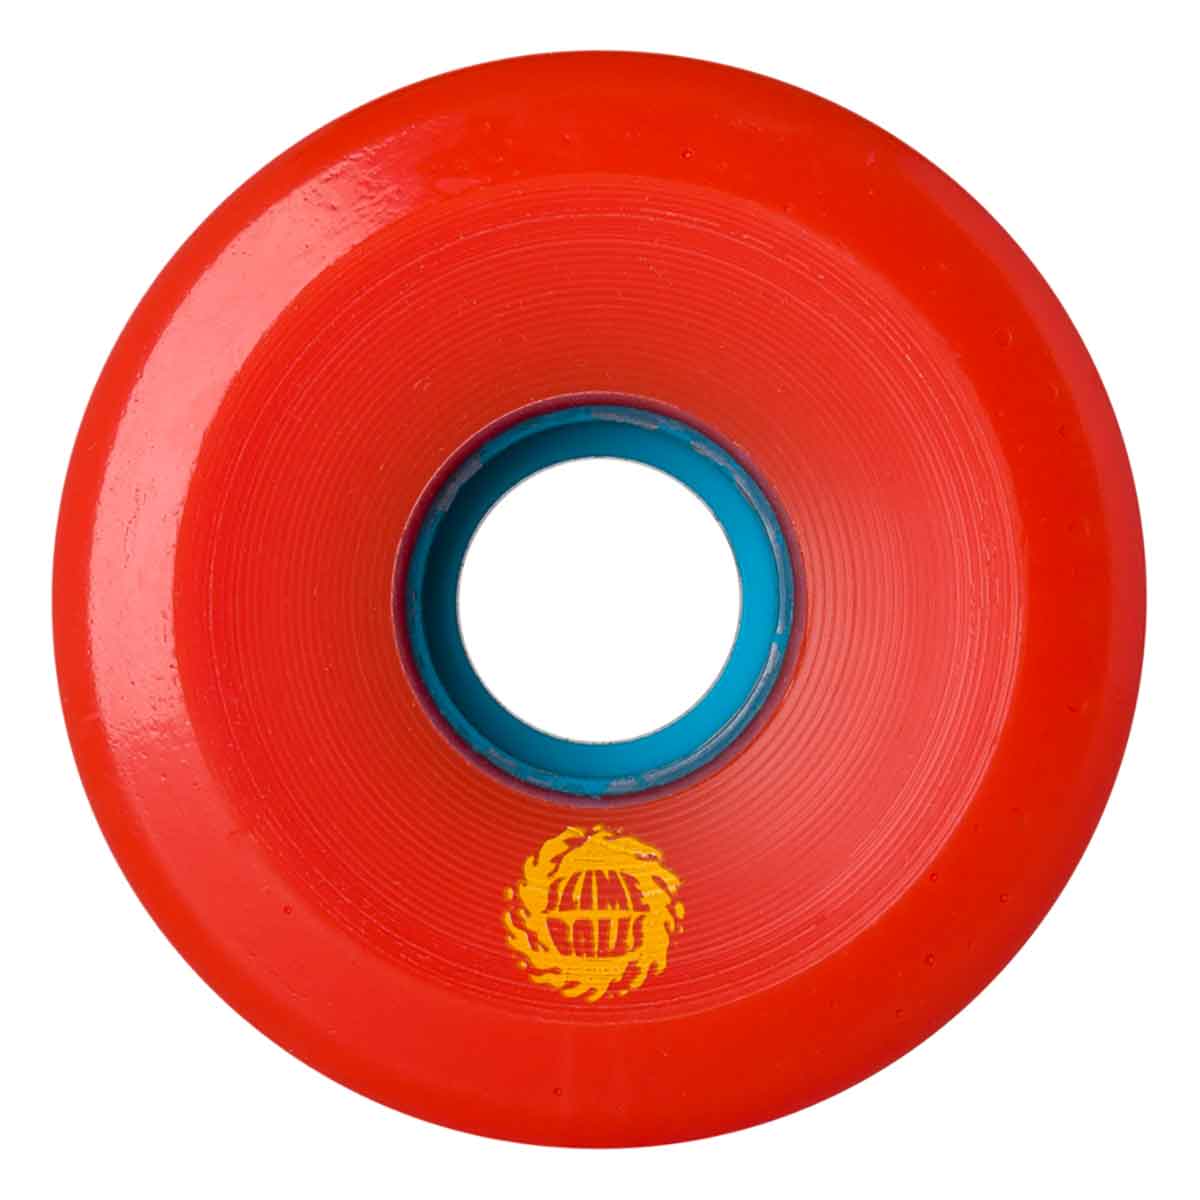 Slime Balls Skateboard Wheels 66mm OG Slime 78A Red 